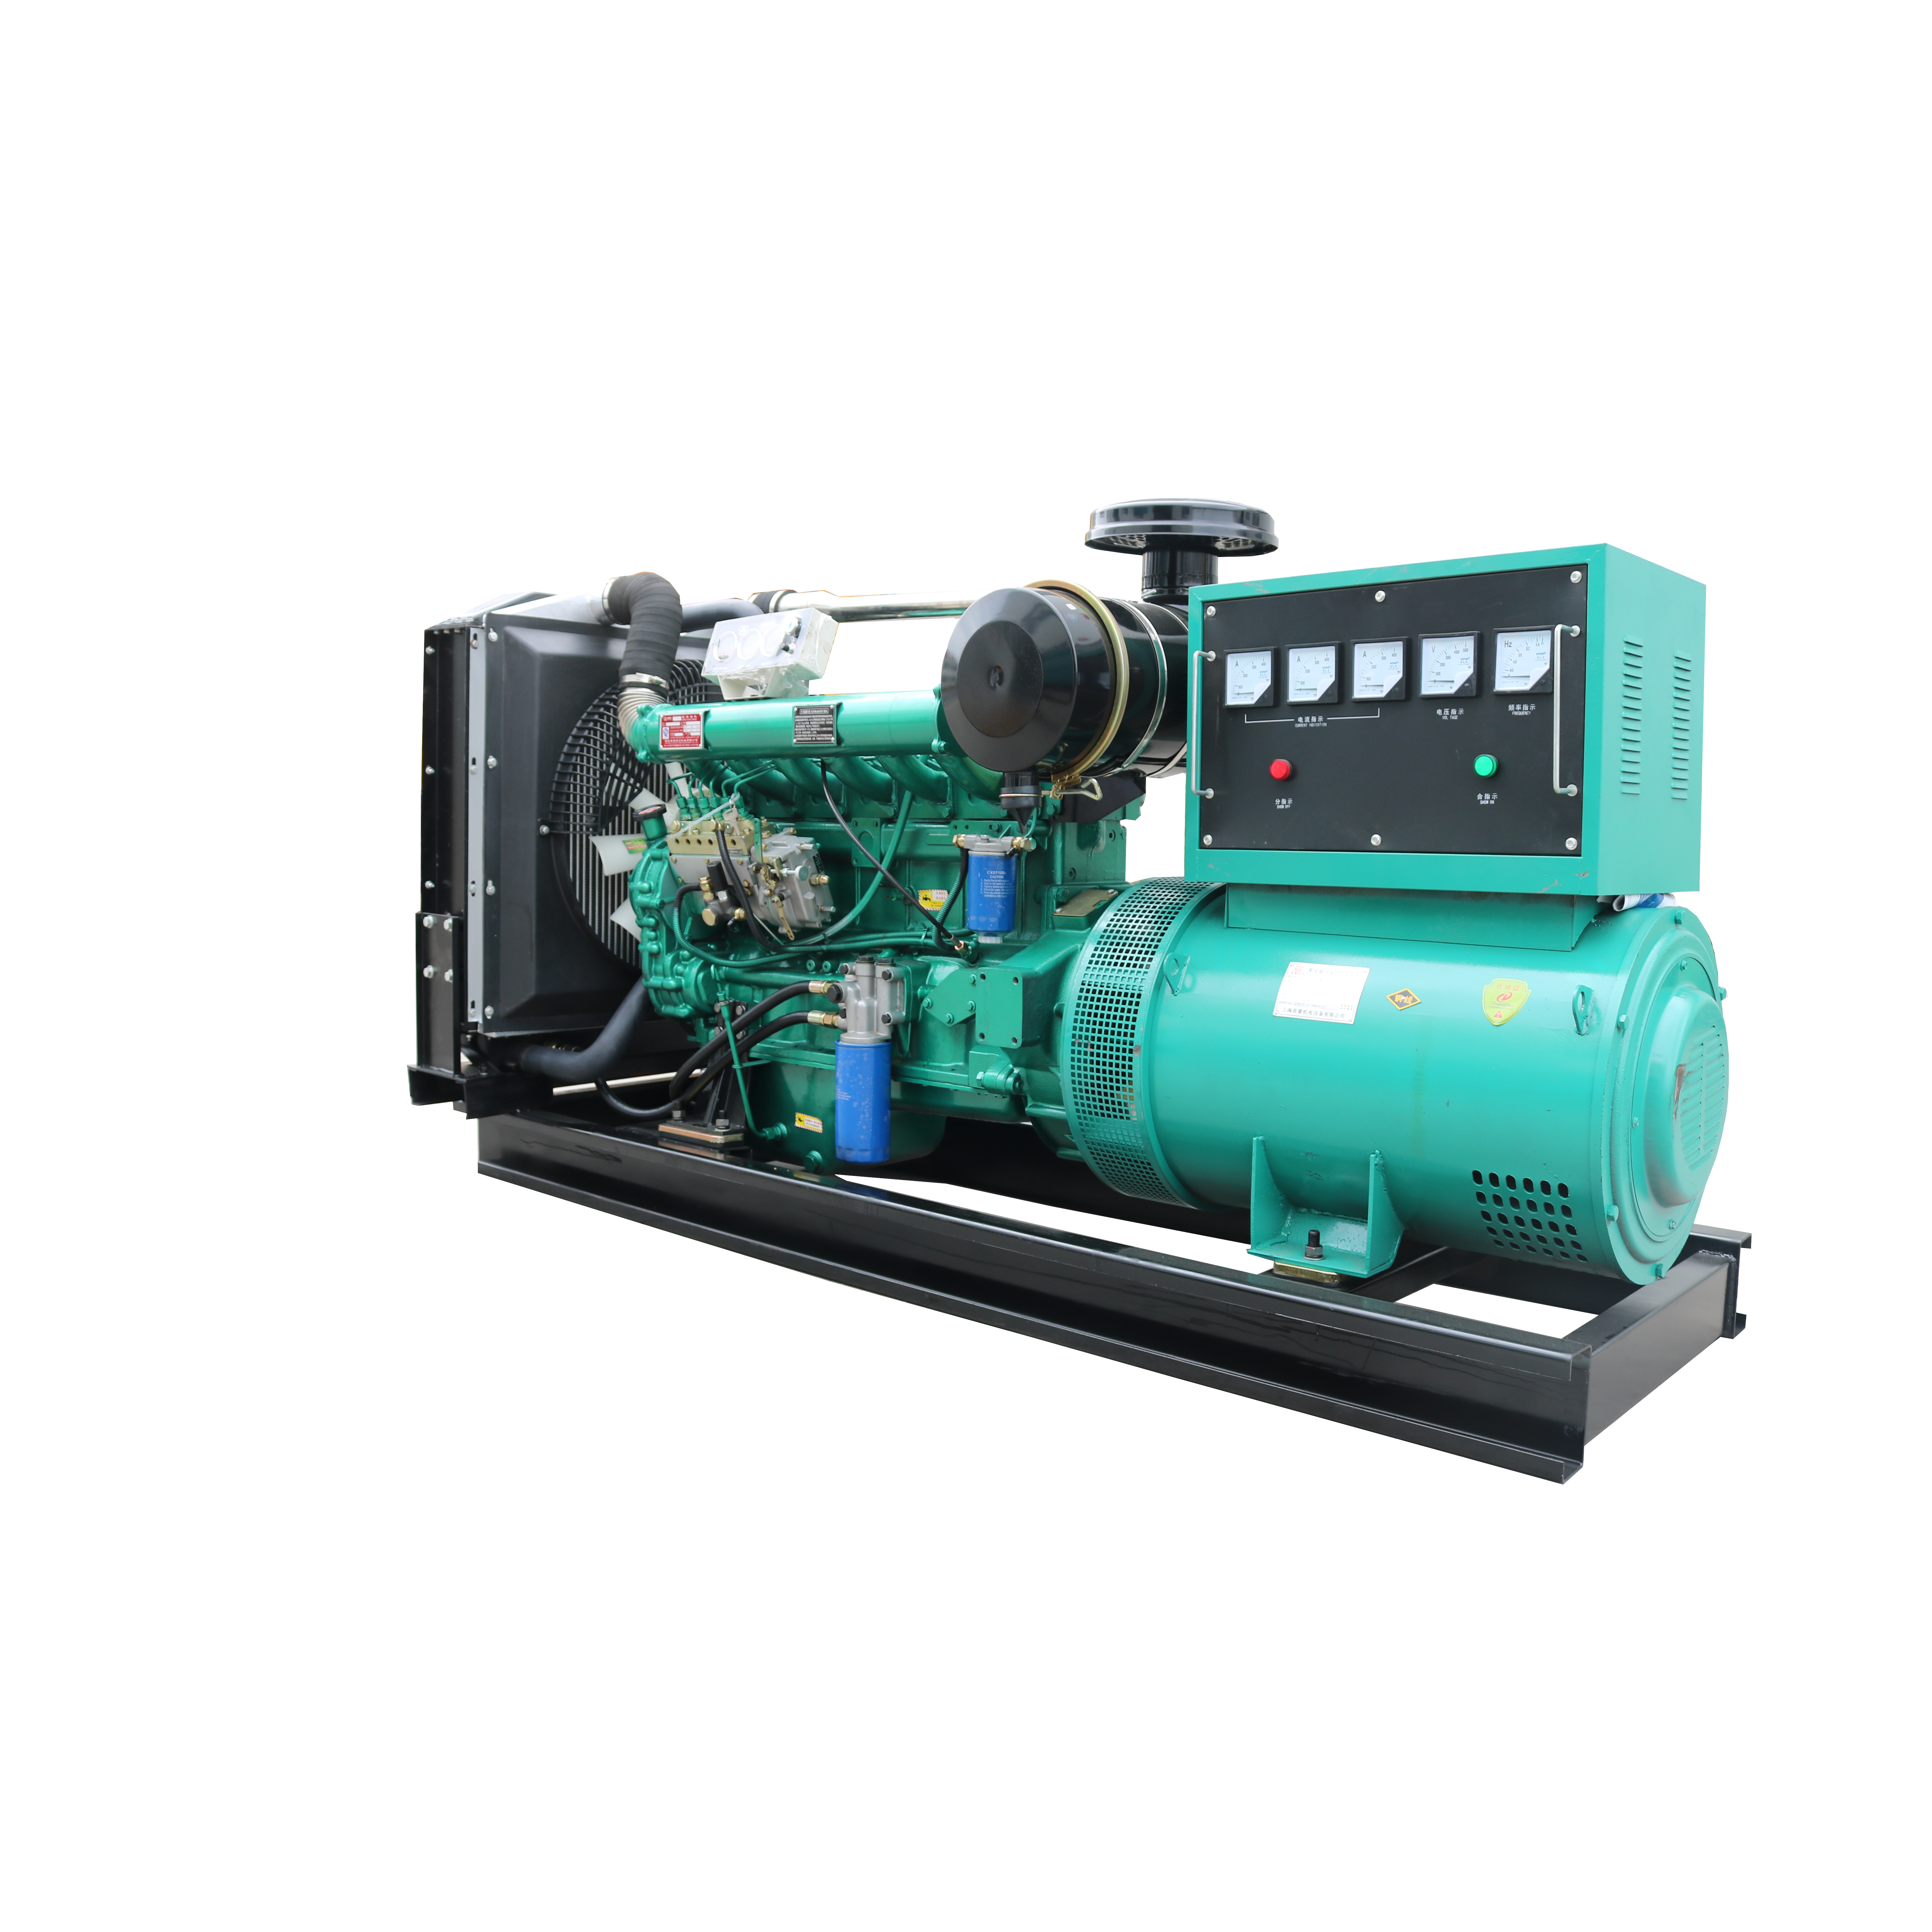 Параметри технічної специфікації дизель-генераторної установки серії 150 кВт Представлене зображення